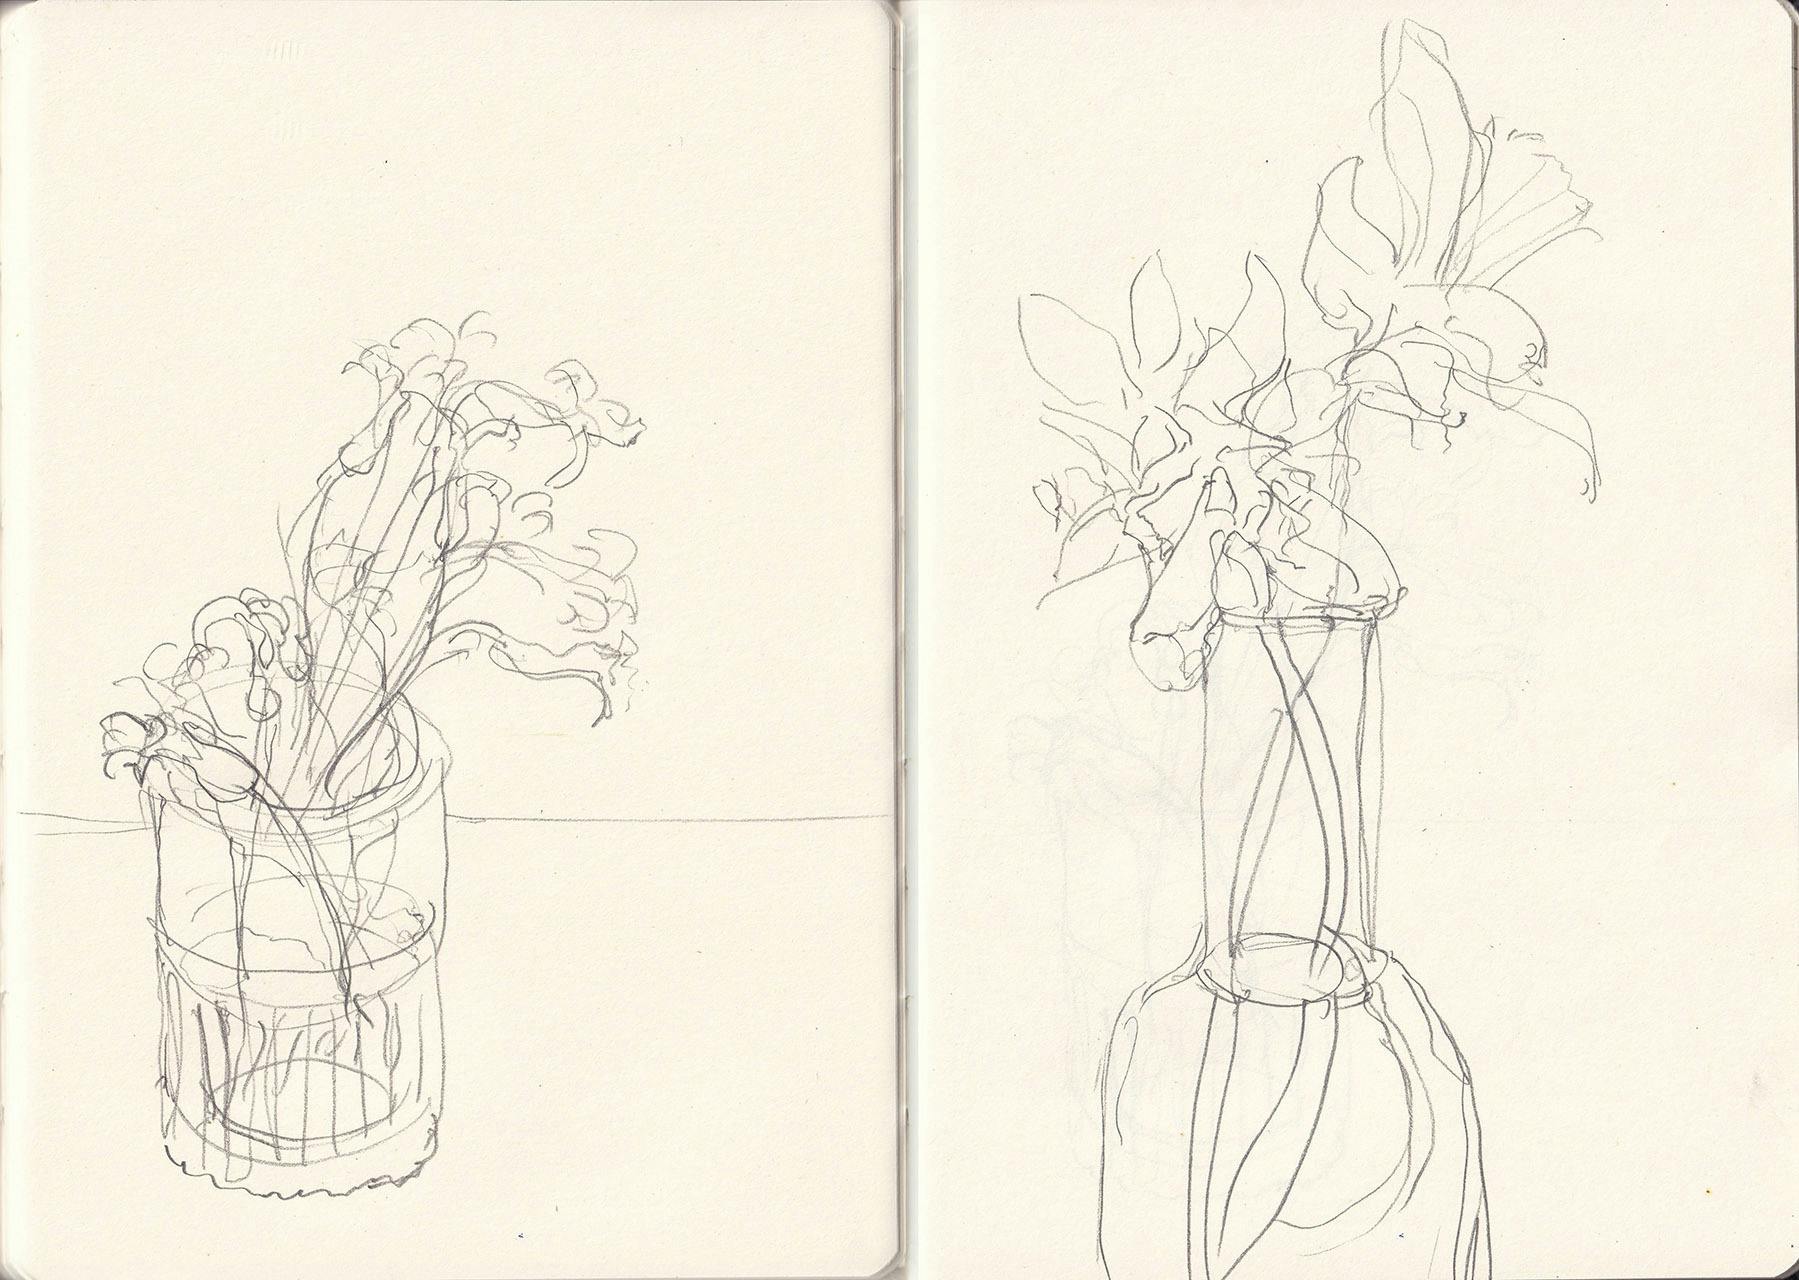 flower sketches